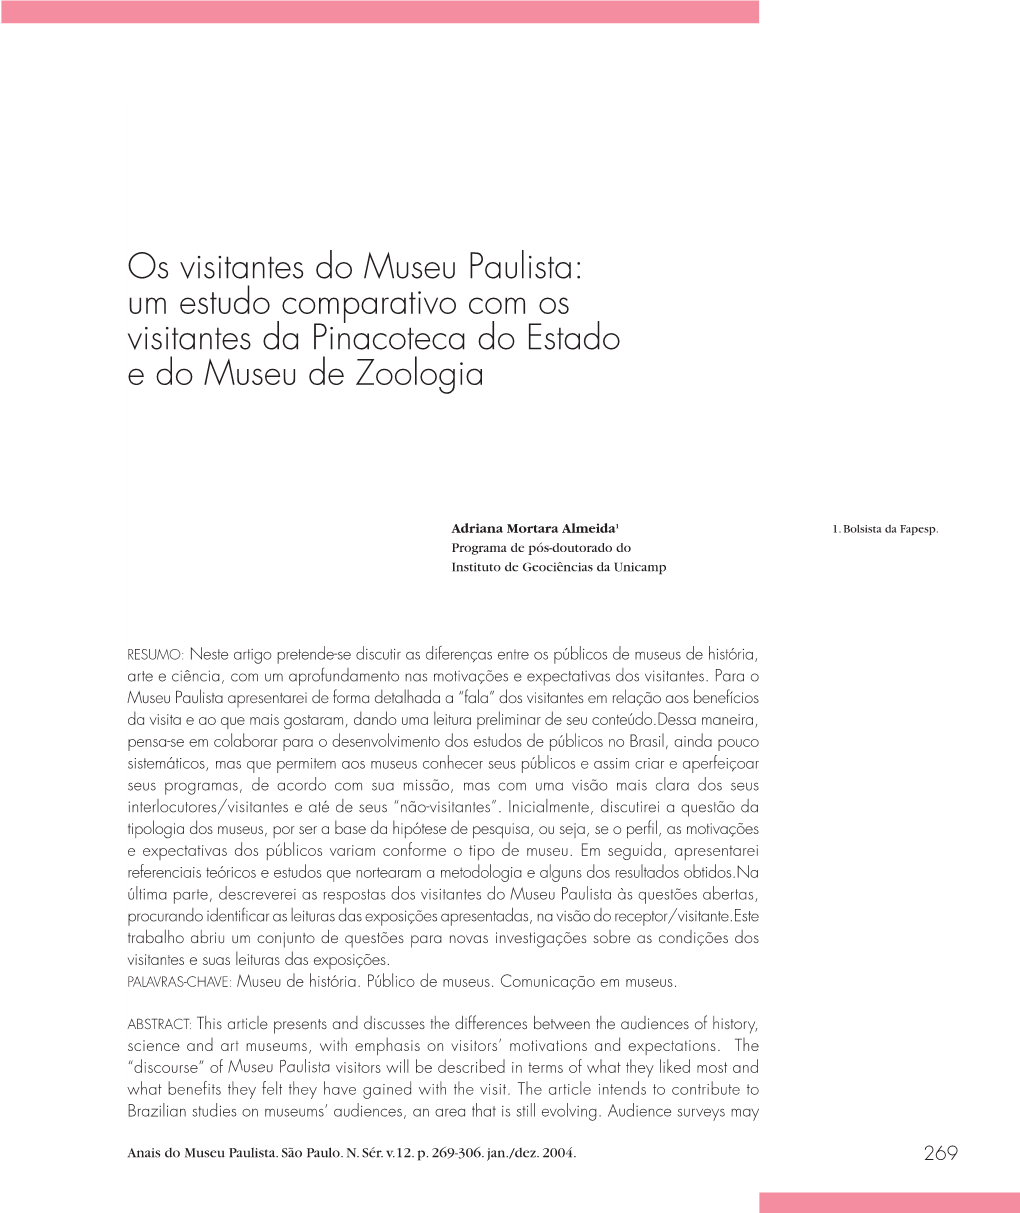 Os Visitantes Do Museu Paulista: Um Estudo Comparativo Com Os Visitantes Da Pinacoteca Do Estado E Do Museu De Zoologia